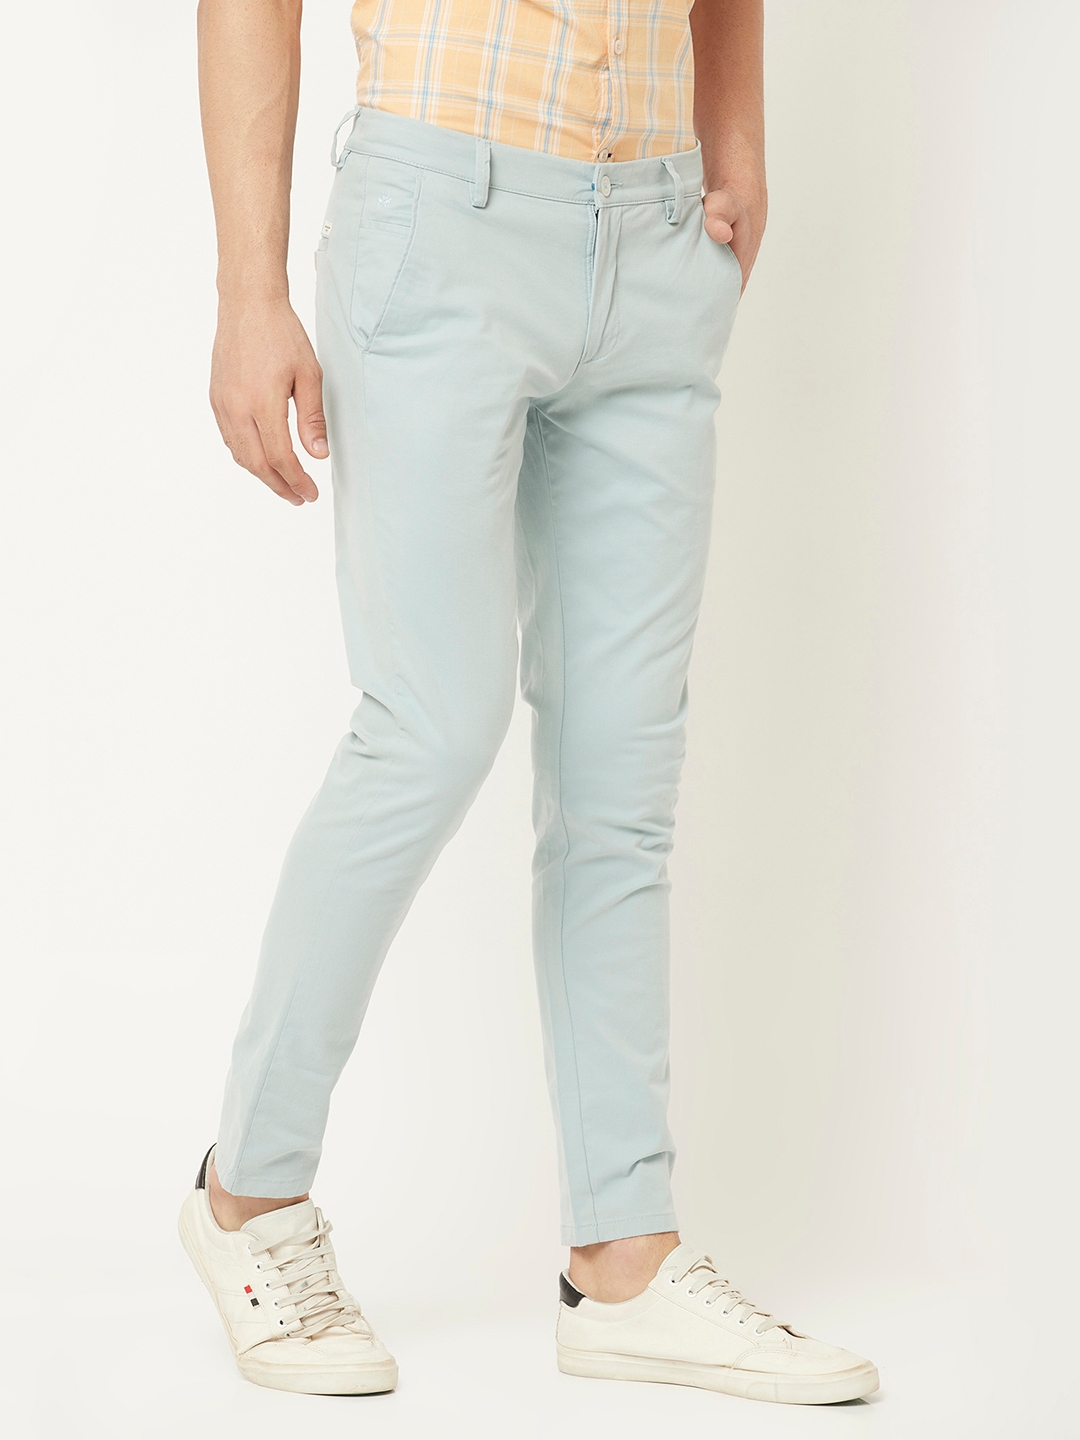 Chic Light Blue Pants - Cropped Pants - Trouser Pants - $59.00 - Lulus